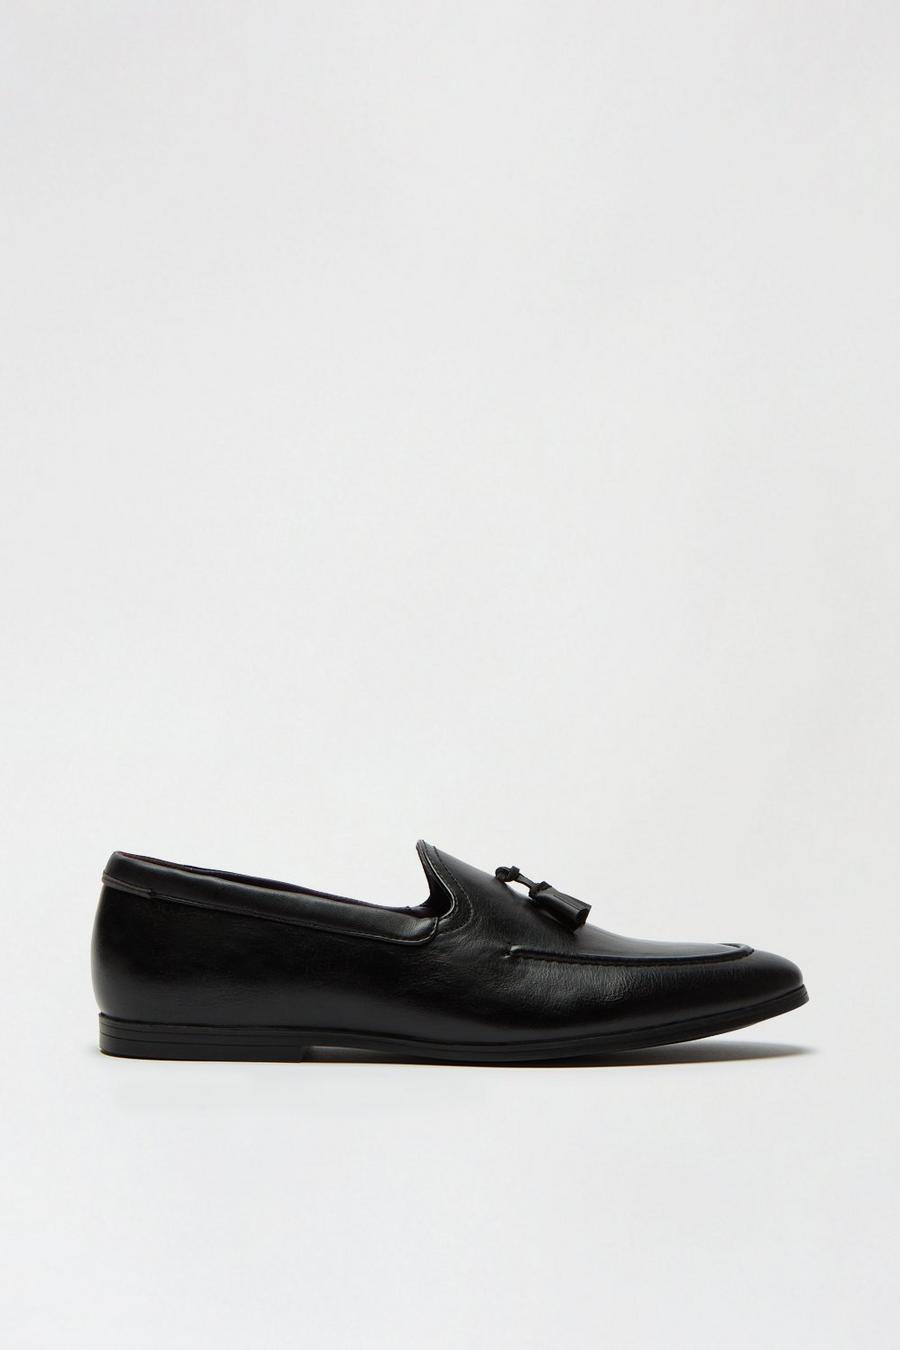 Black Leather Look Tassel Loafers